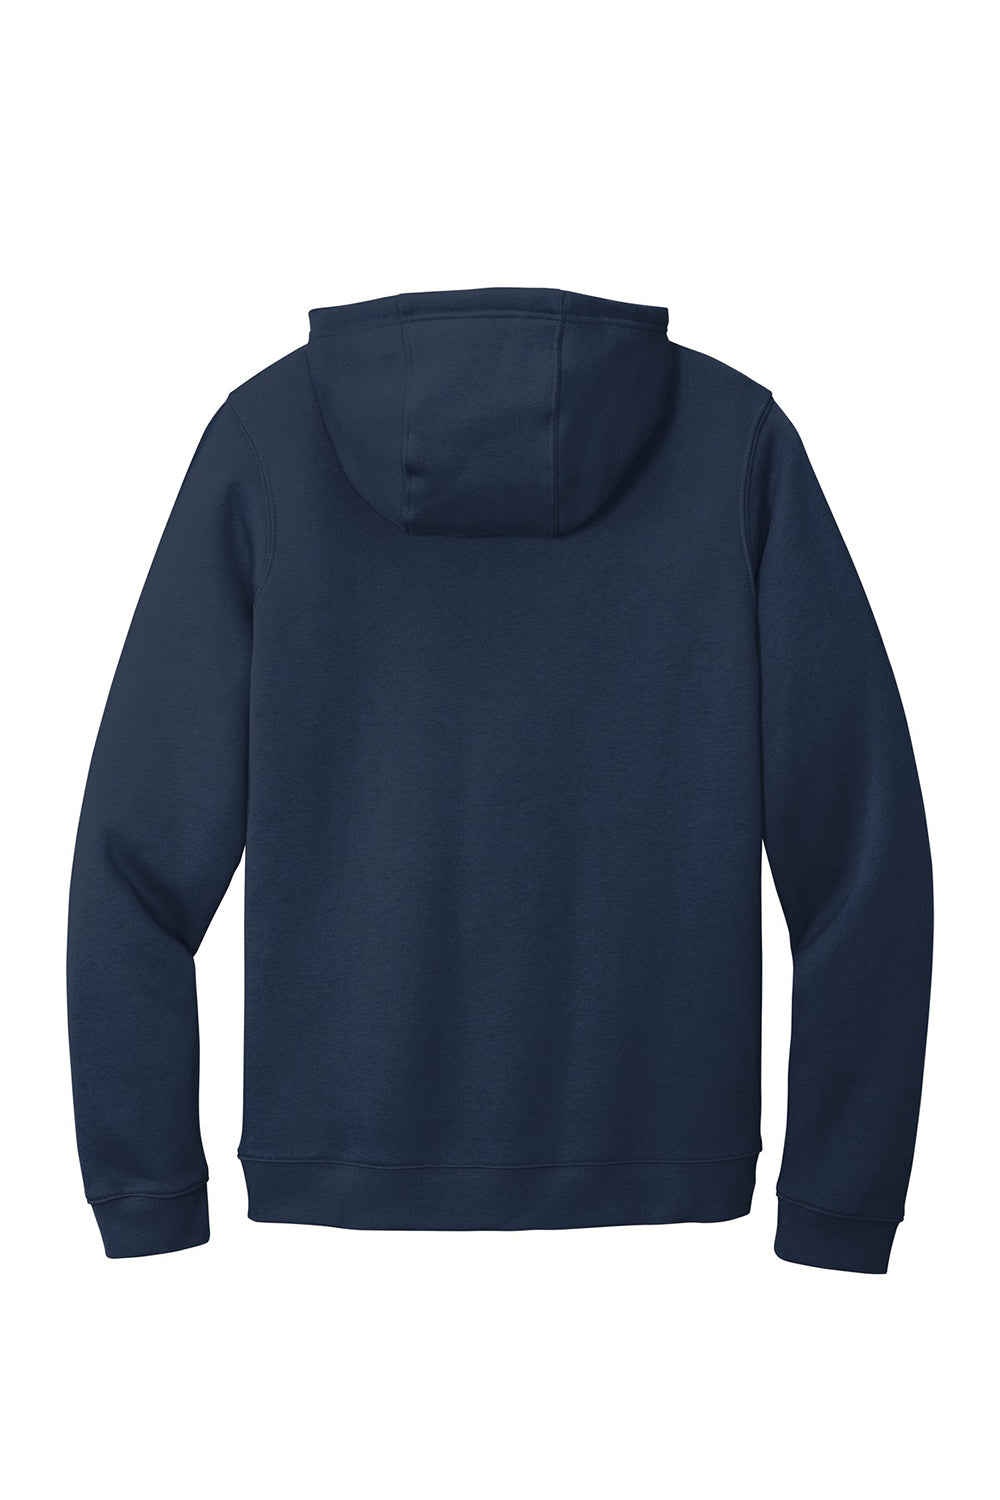 Nike CJ1611 Mens Club Fleece Hooded Sweatshirt Hoodie Navy Blue Flat Back